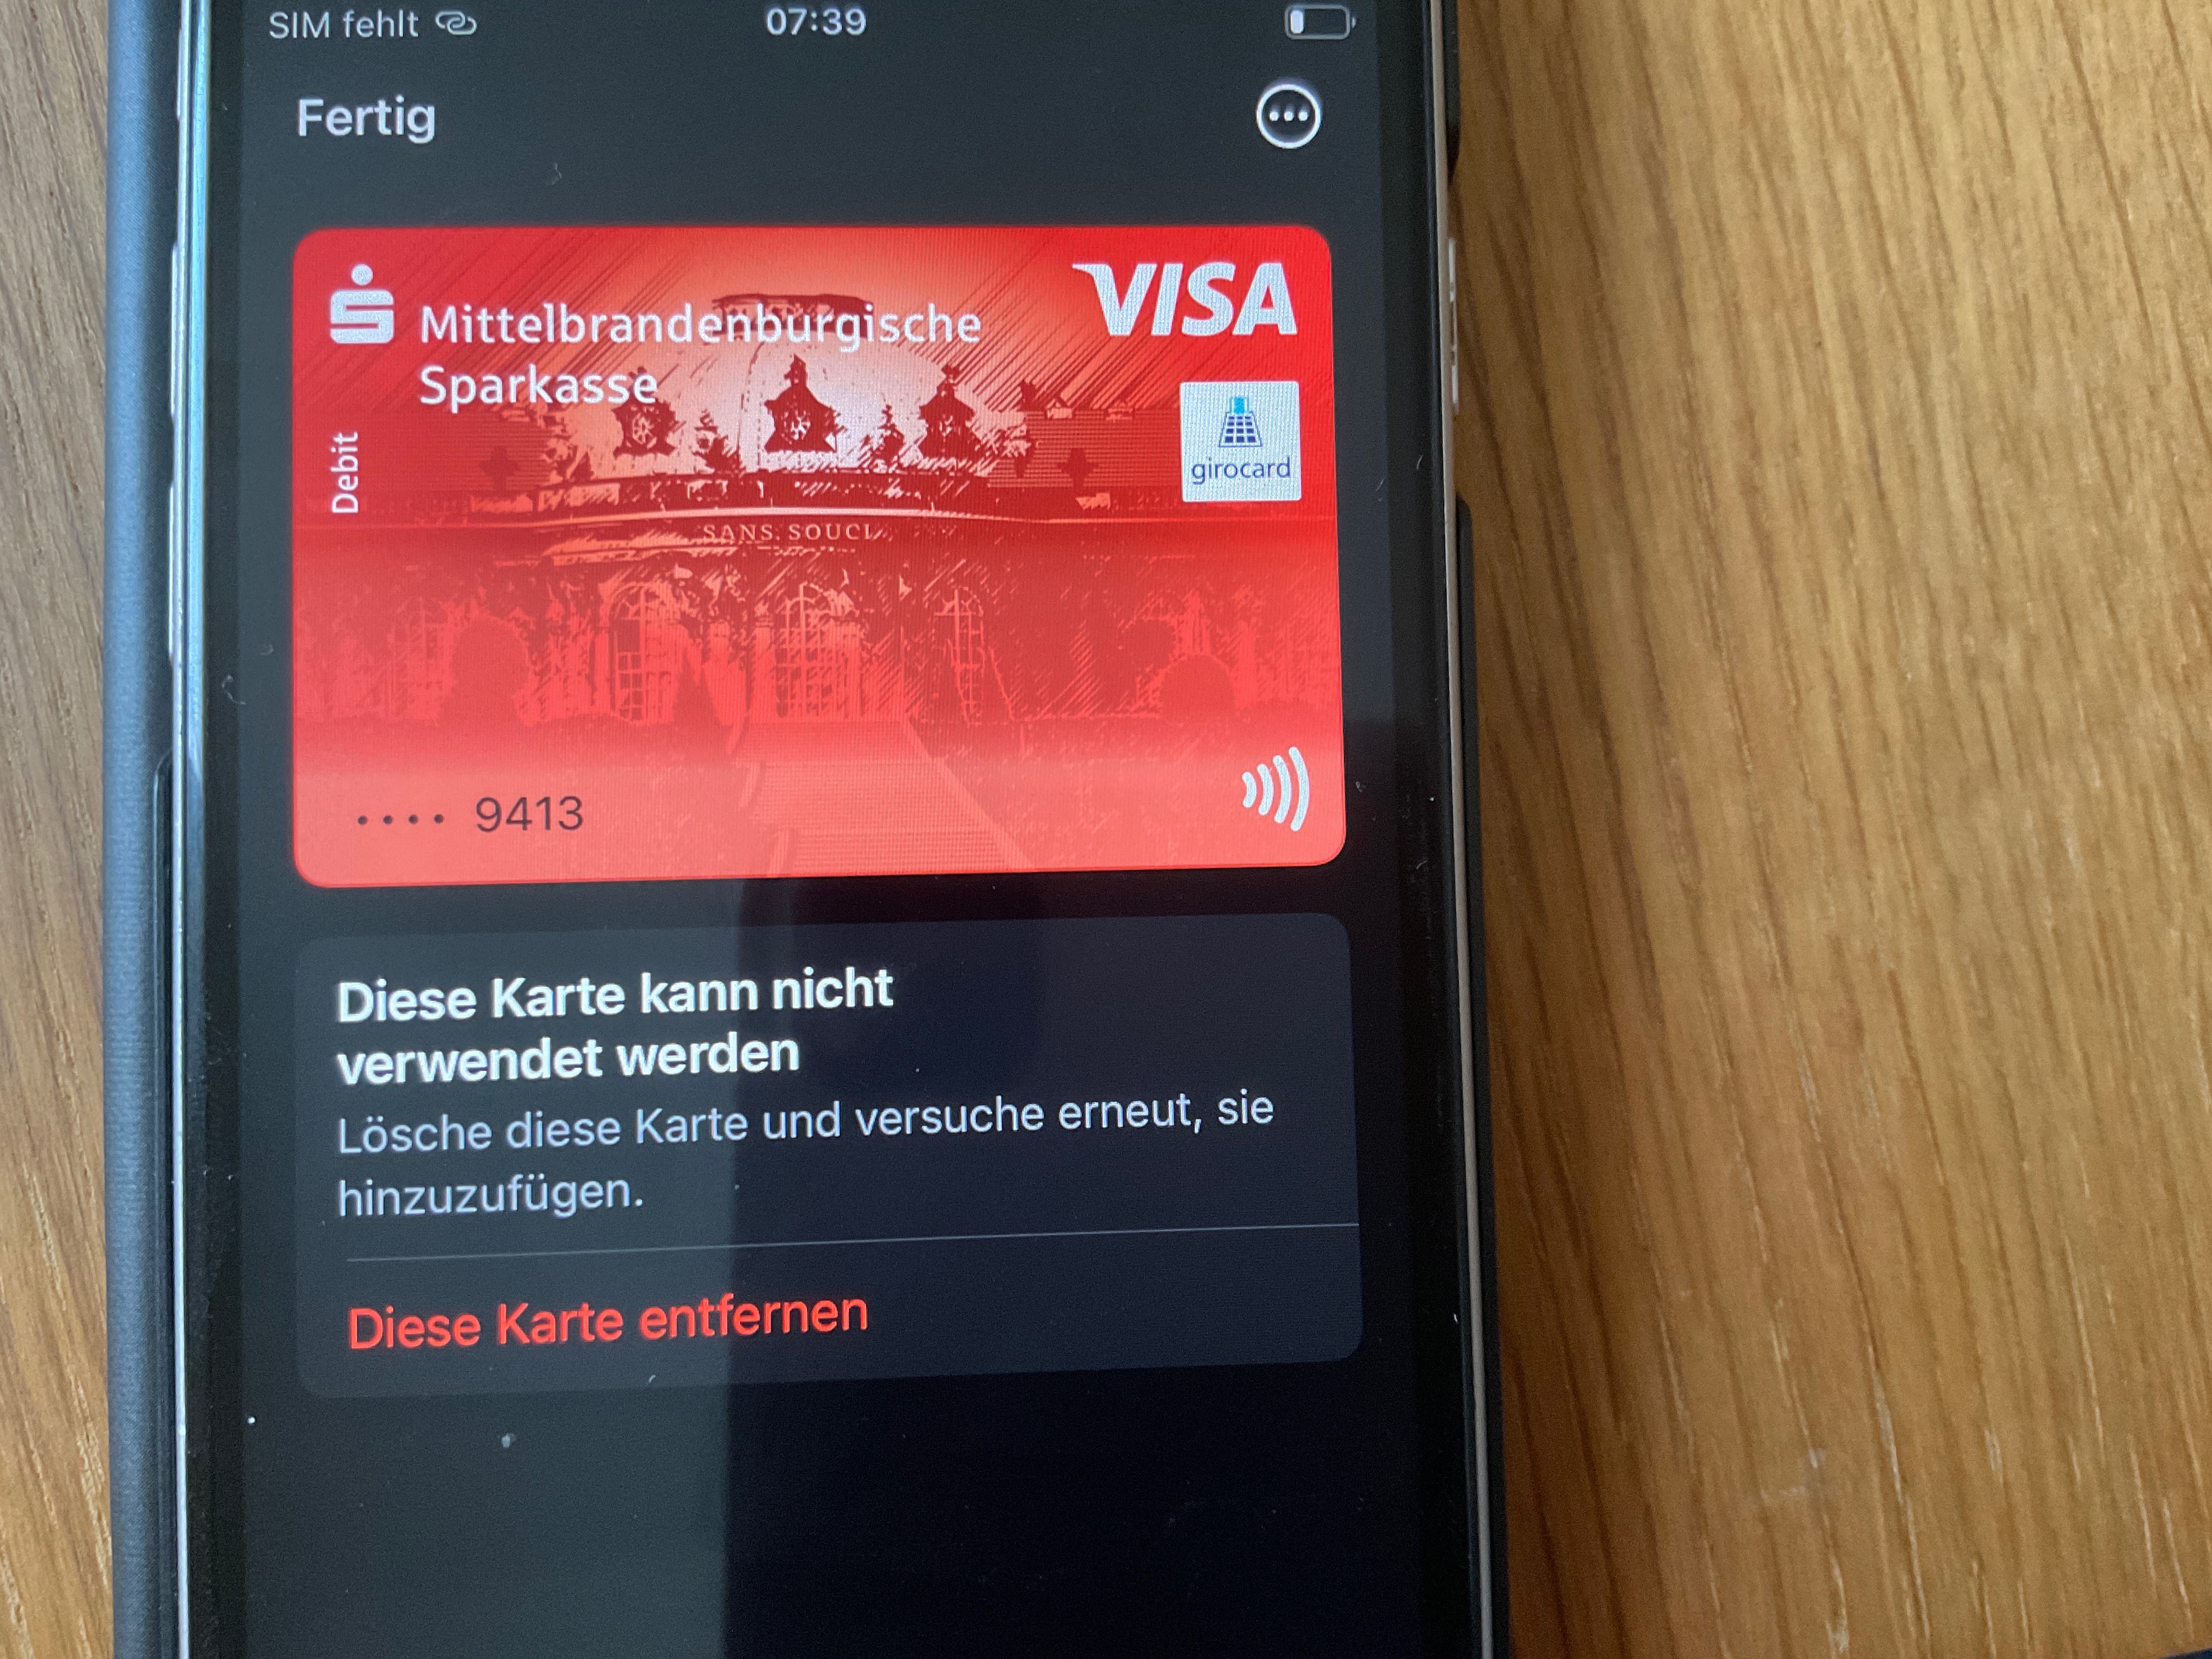 Ich kann keine Karten zu meiner Wallet Ap… - Apple Community